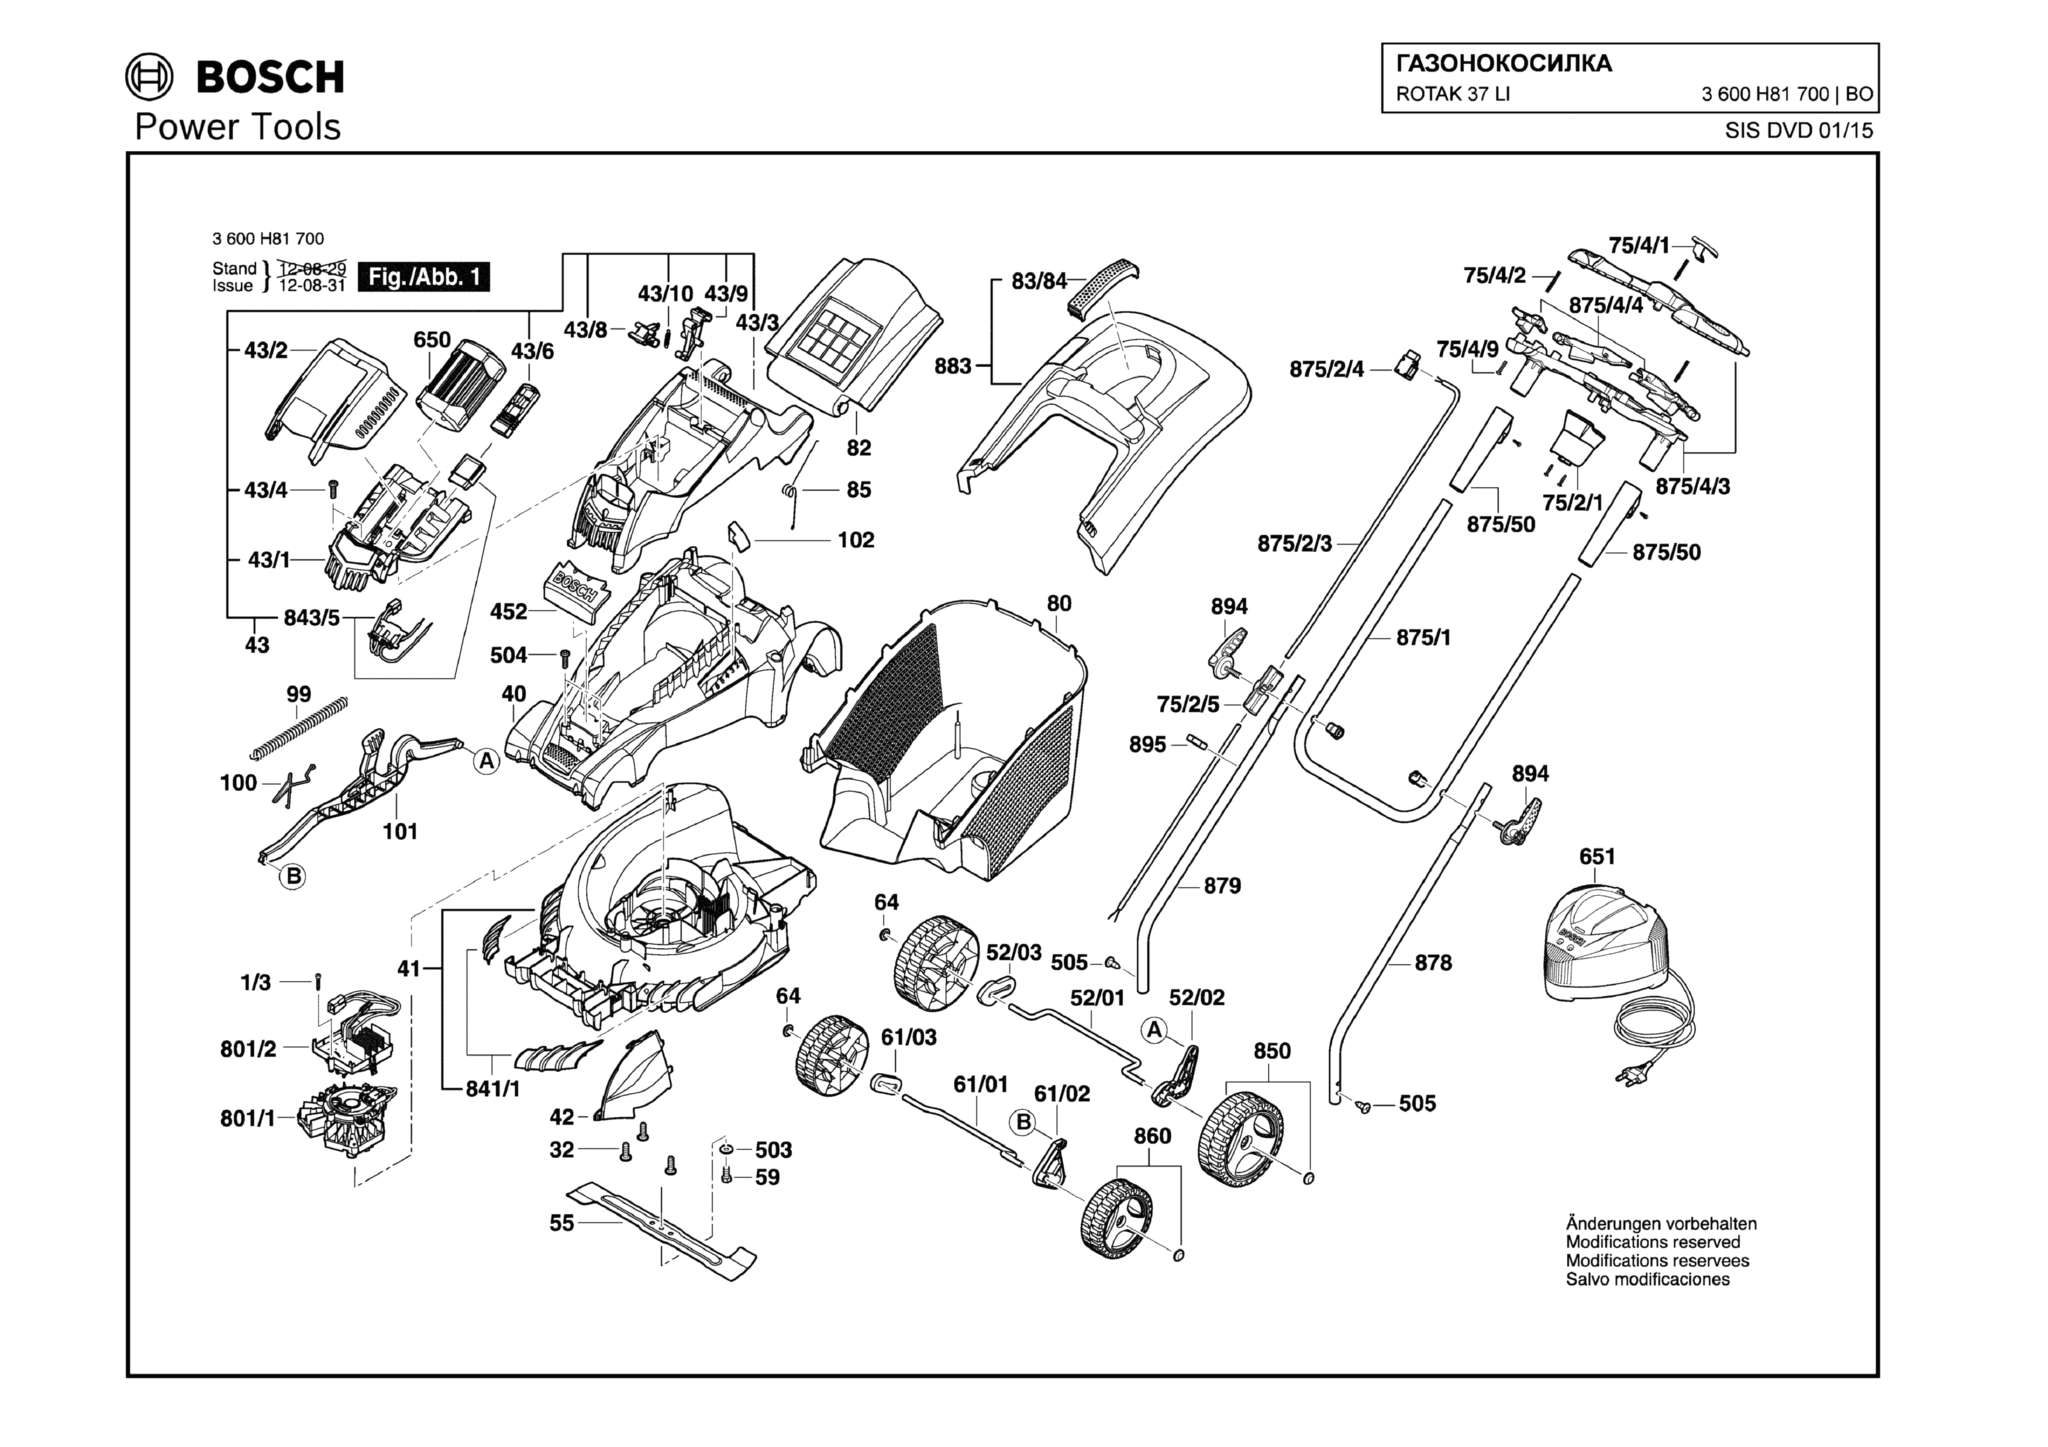 Запчасти, схема и деталировка Bosch ROTAK 37 LI (ERGOFLEX) (ТИП 3600H81700)